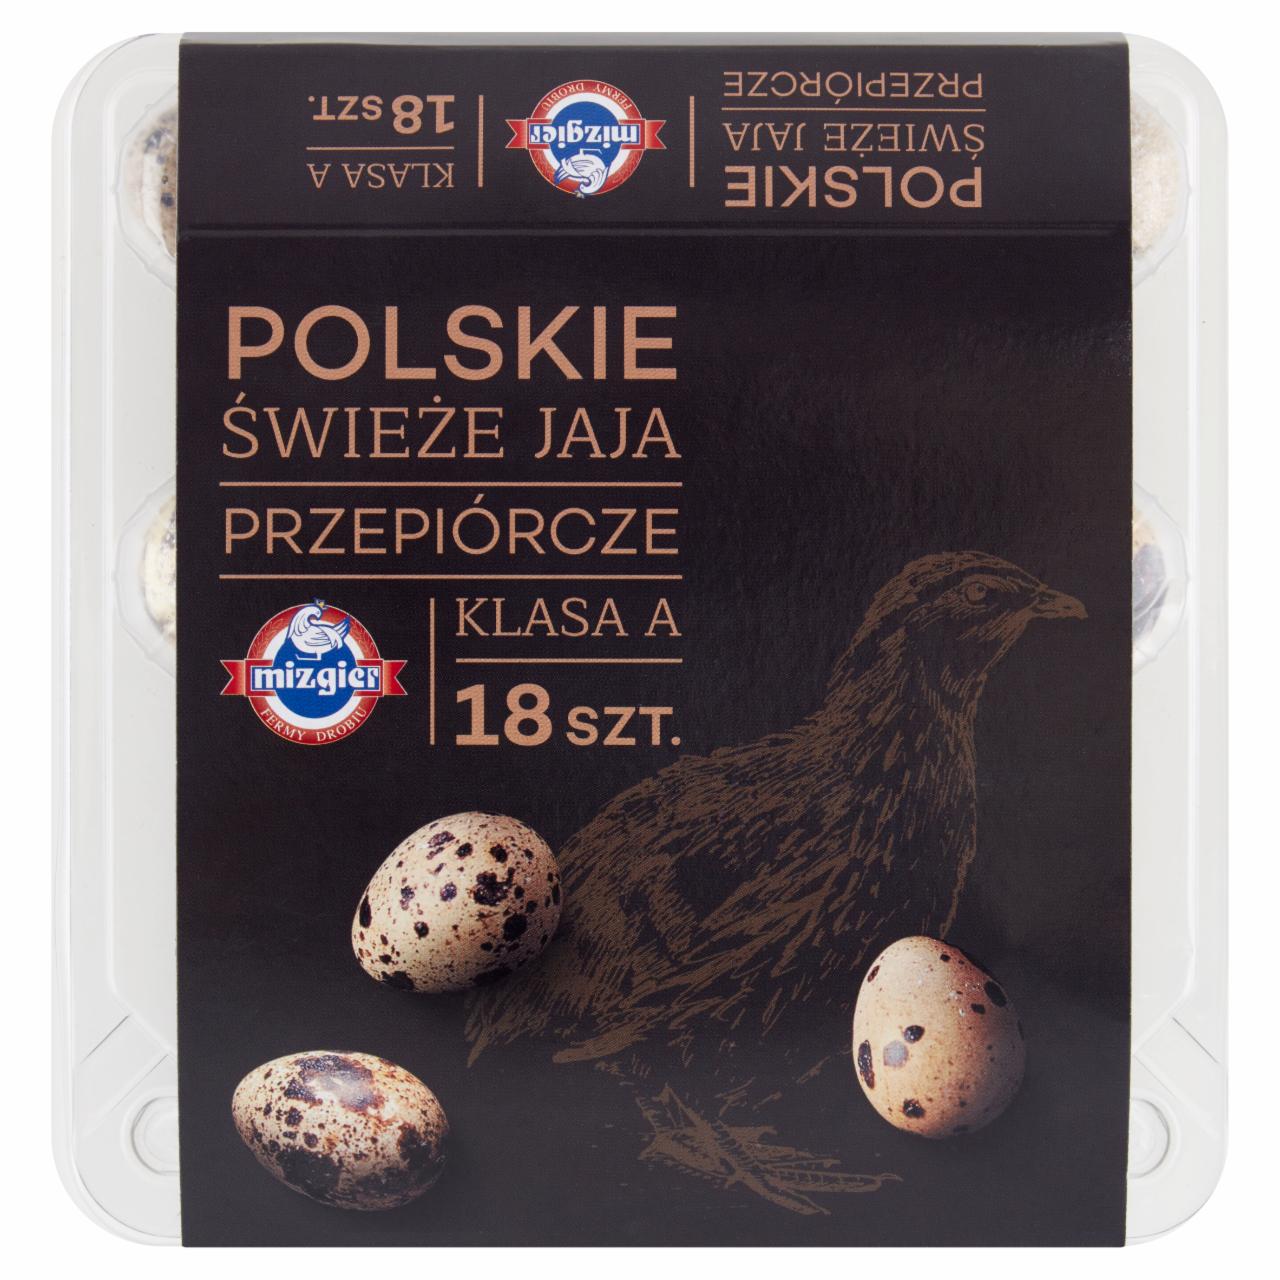 Zdjęcia - Mizgier Polskie świeże jaja przepiórcze 18 sztuk